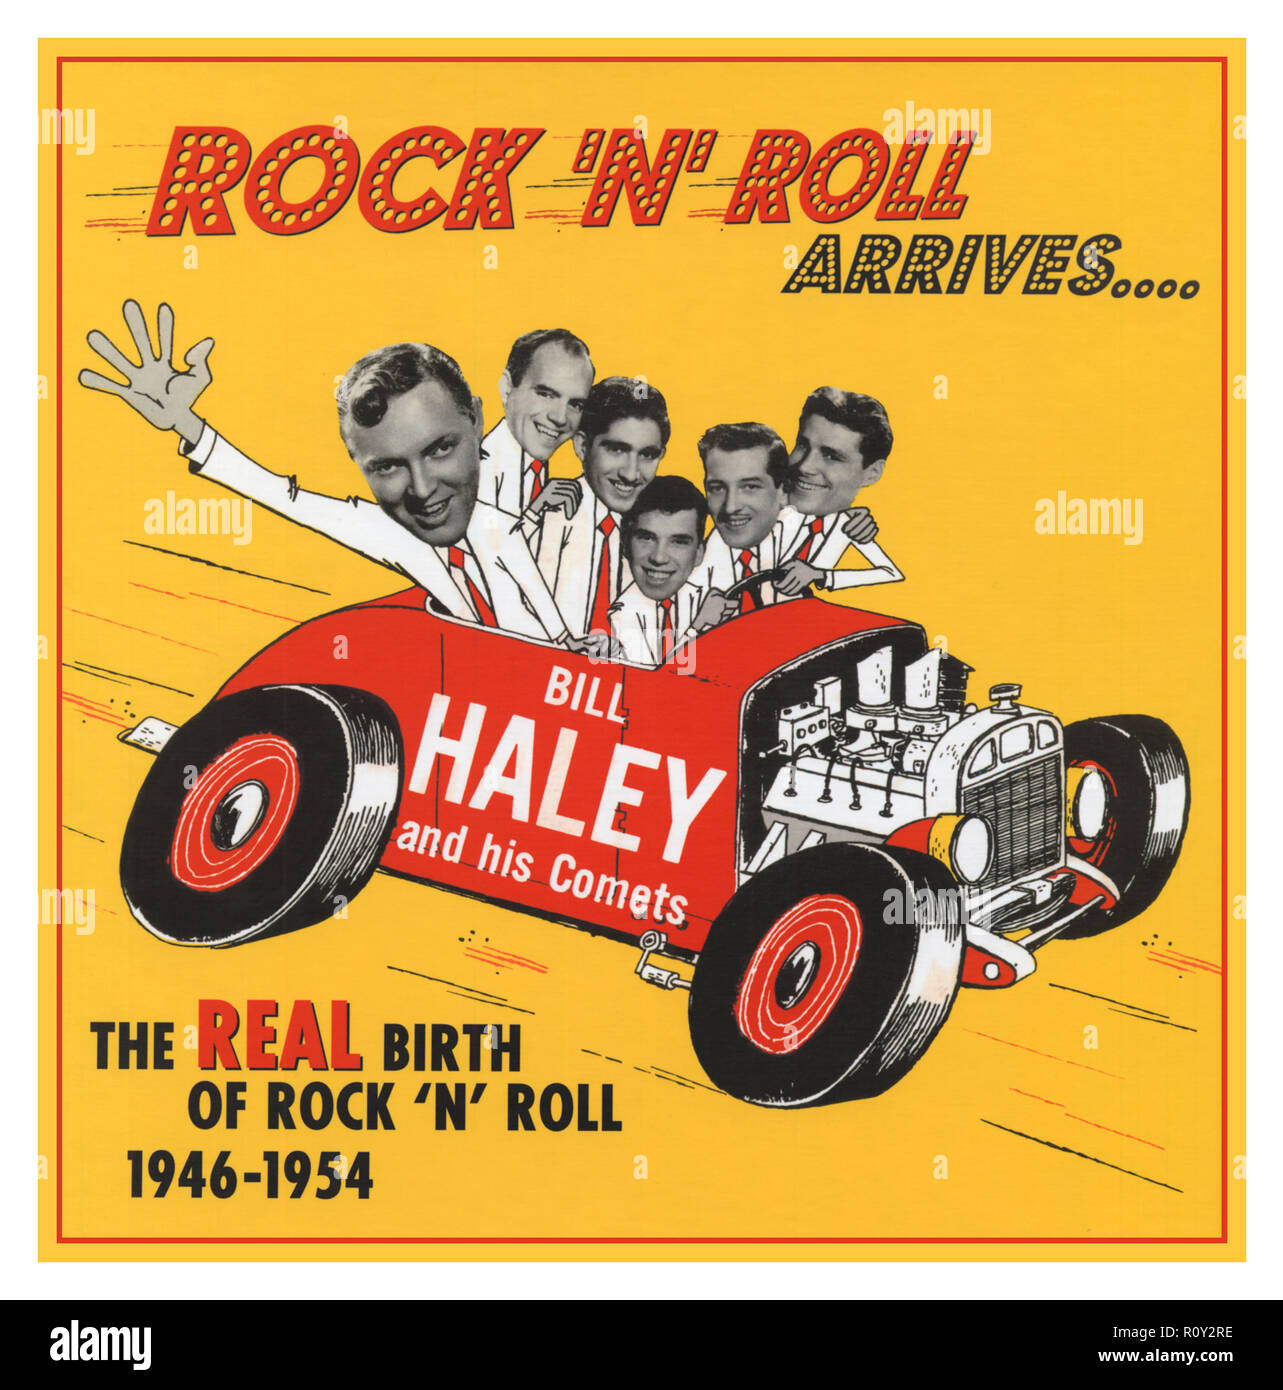 Bill Haley y sus cometas ‎- Rock 'N' Roll llega.. CD recopilatorio de Bill Haley y sus cometas canciones de rock and roll de 1946-1954 re-release 2006 estas grabaciones son donde el rock 'n' roll comenzó realmente. Predaten Rock alrededor del reloj, y revelan a Bill y los cometas en el trabajo sobre su propia mezcla única de boogie woogie, hillbilly, pop, blues y jazz, años antes que nadie. Le escuchamos inventar la música que aún no tiene nombre, que llegó a ser llamado rock 'n' roll que eventualmente cambió el mundo. Foto de stock